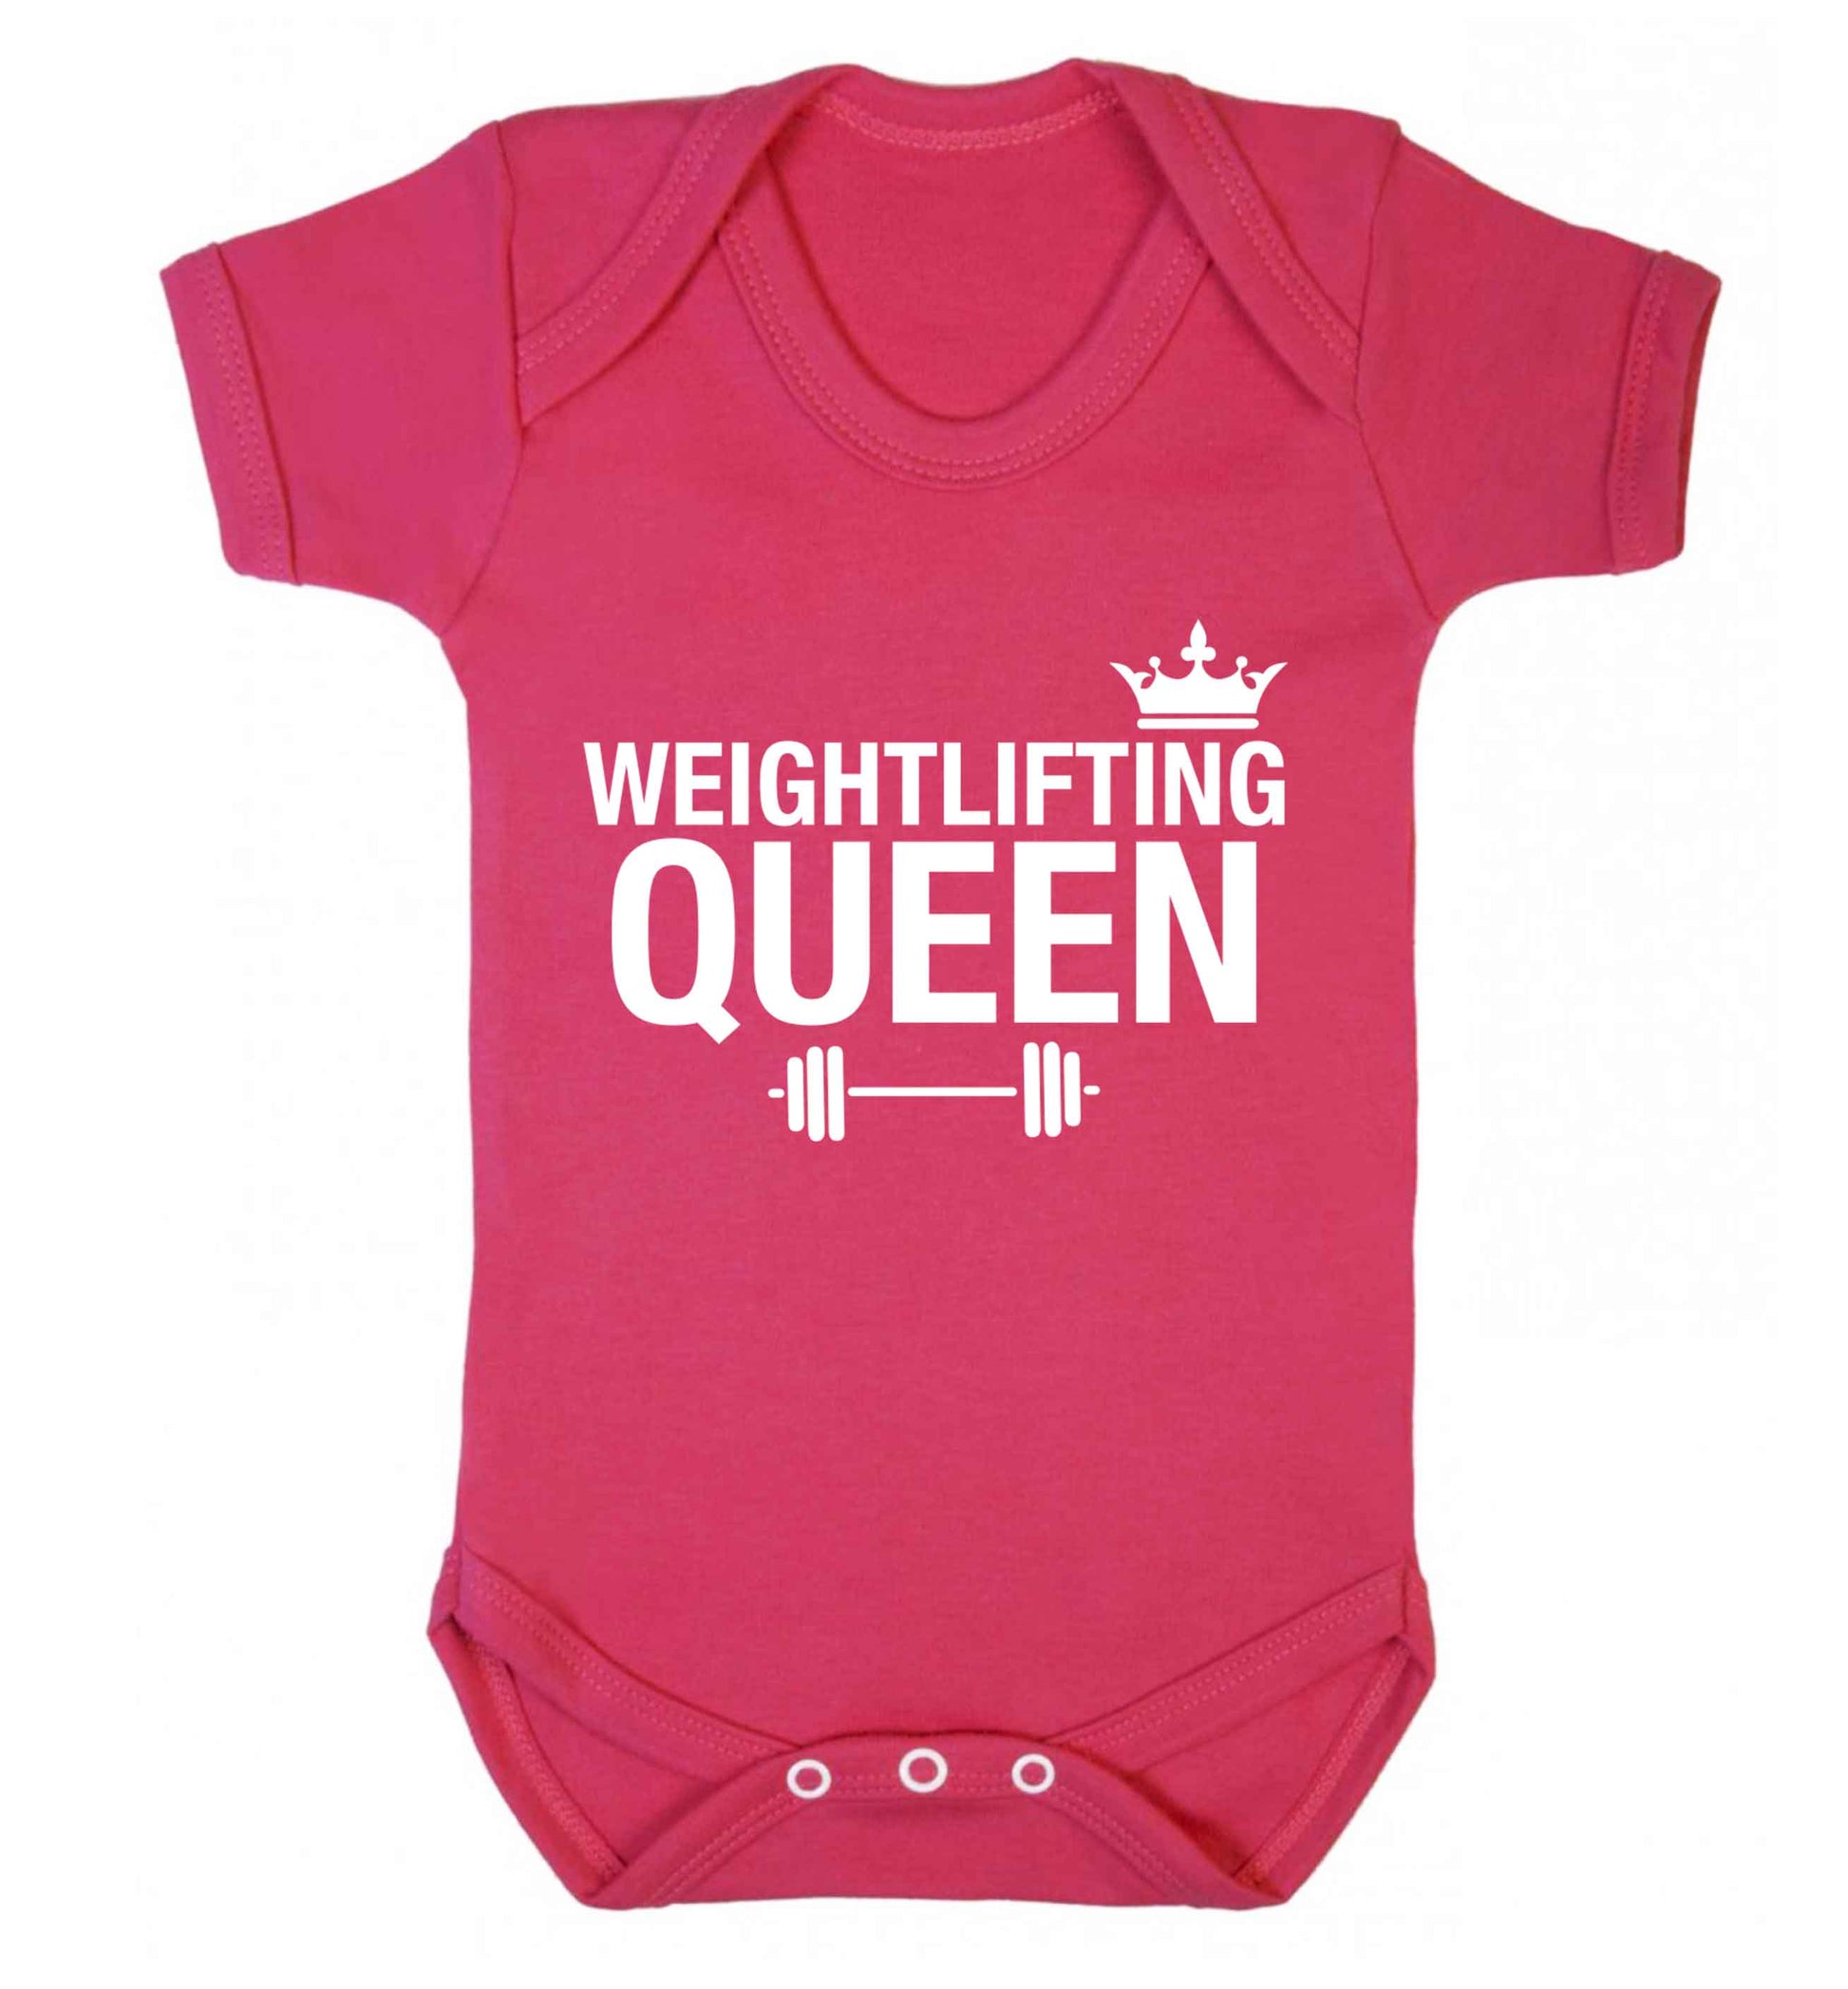 Weightlifting Queen Baby Vest dark pink 18-24 months